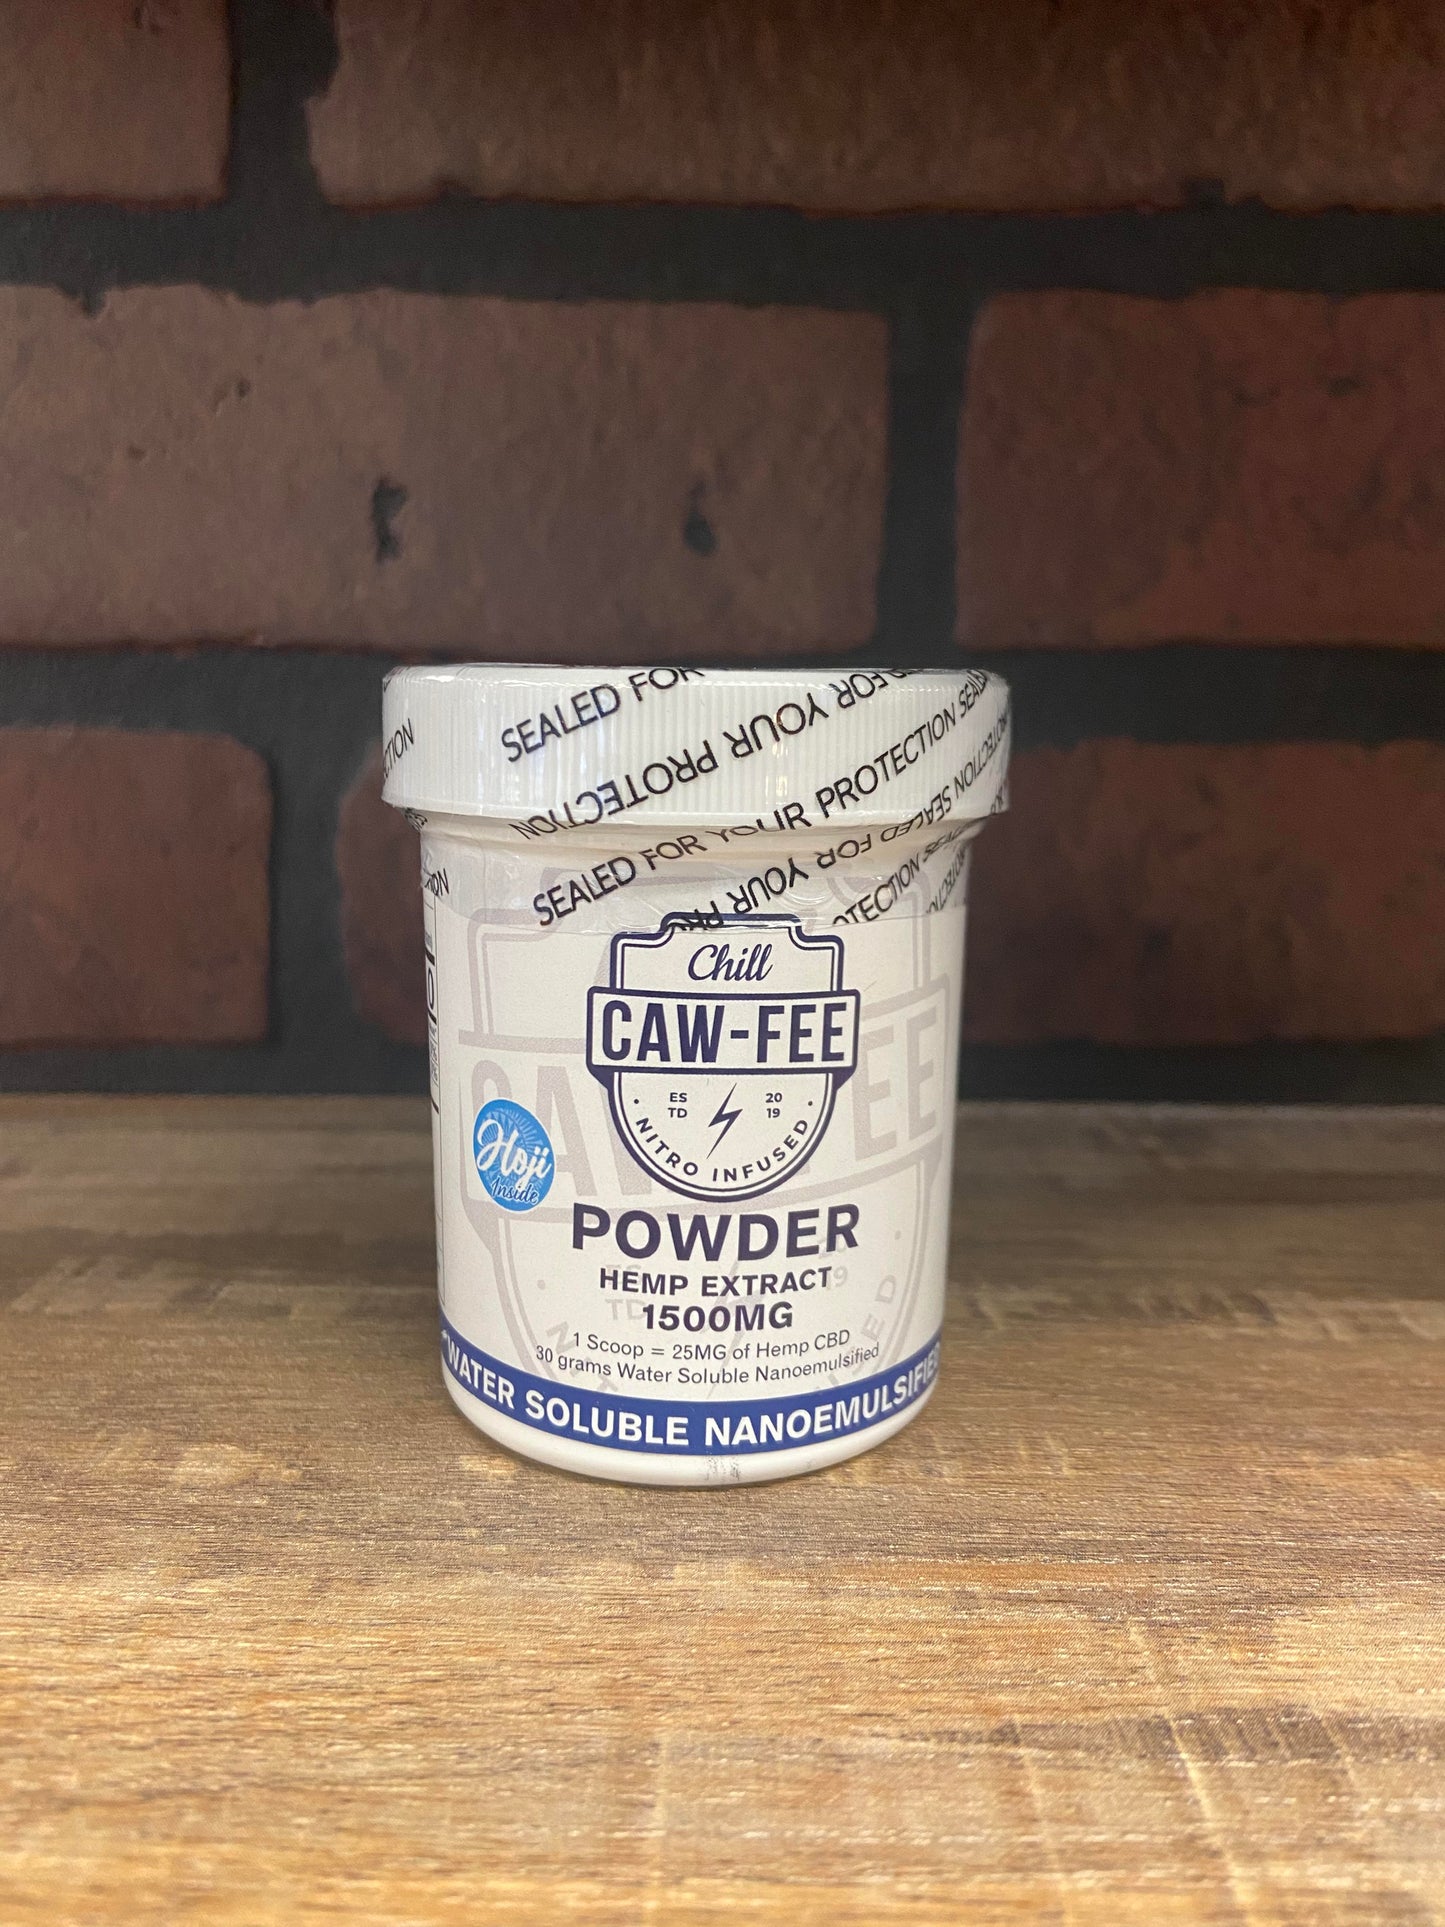 Chill CAW-FEE CBD powder